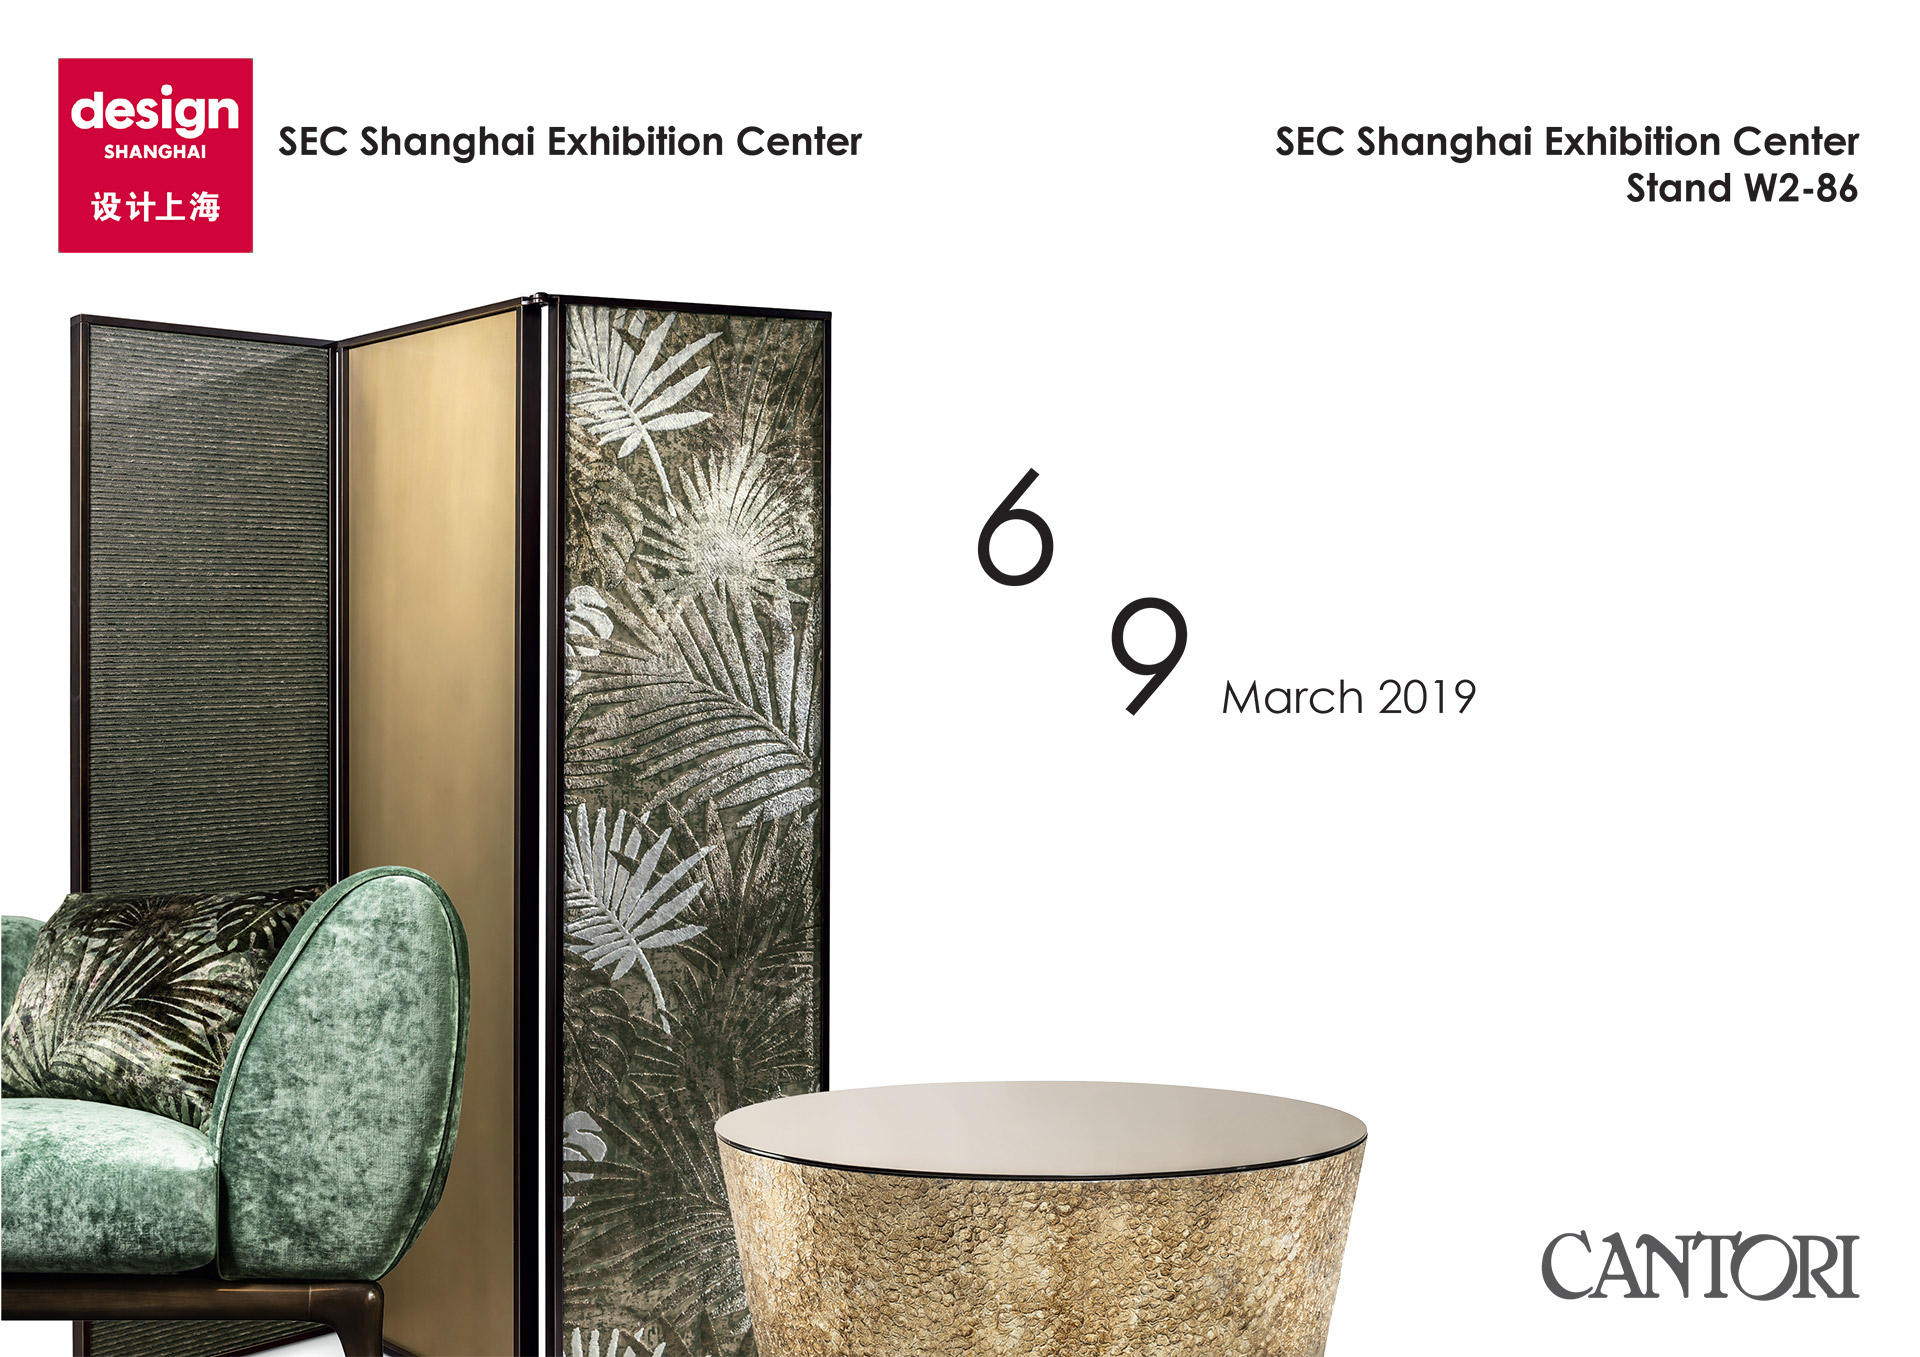 12/02/2019 Cantori at Design Shanghai 2019 - Cantori